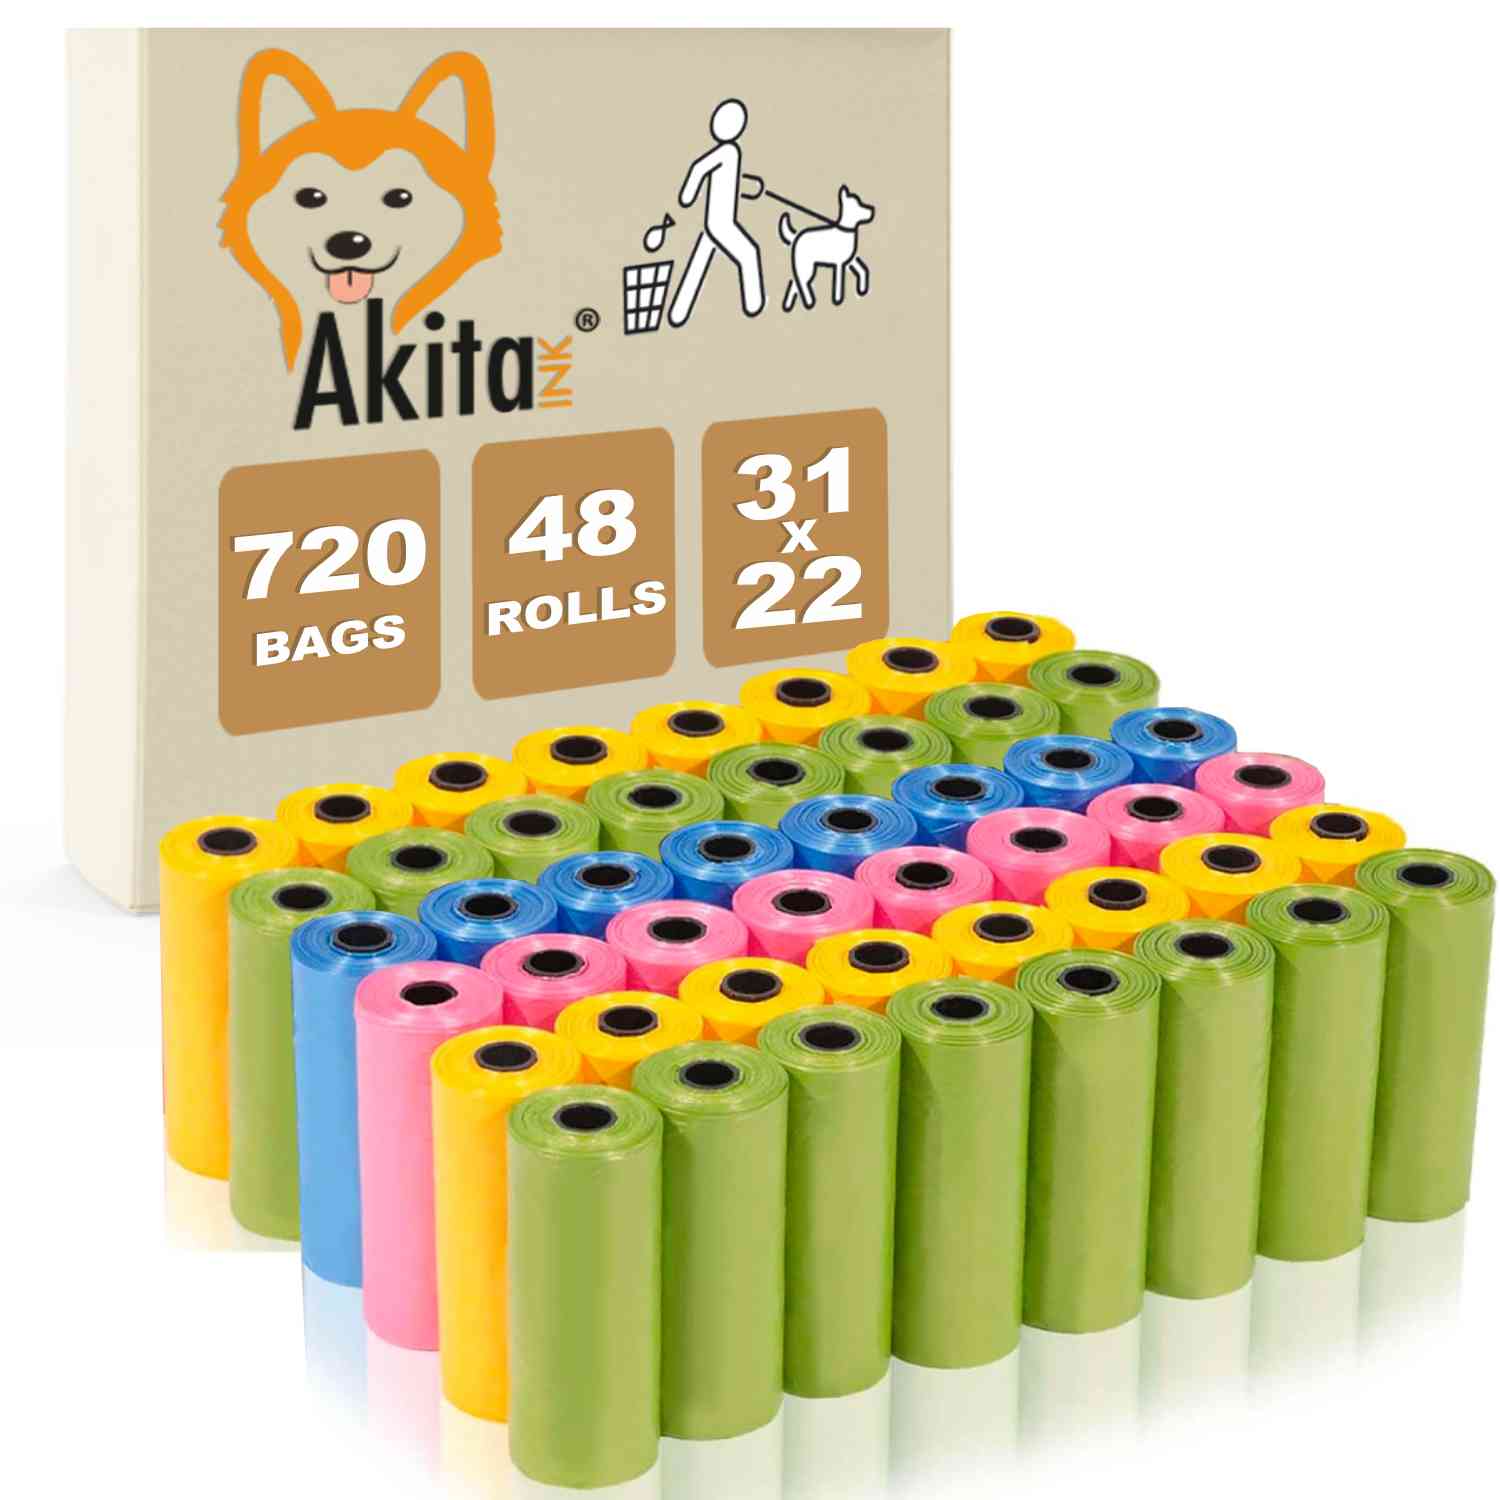 Sacchetti per cacca di cane akitaink: 720 sacchetti, 48 rotoli da 15 sacchetti.